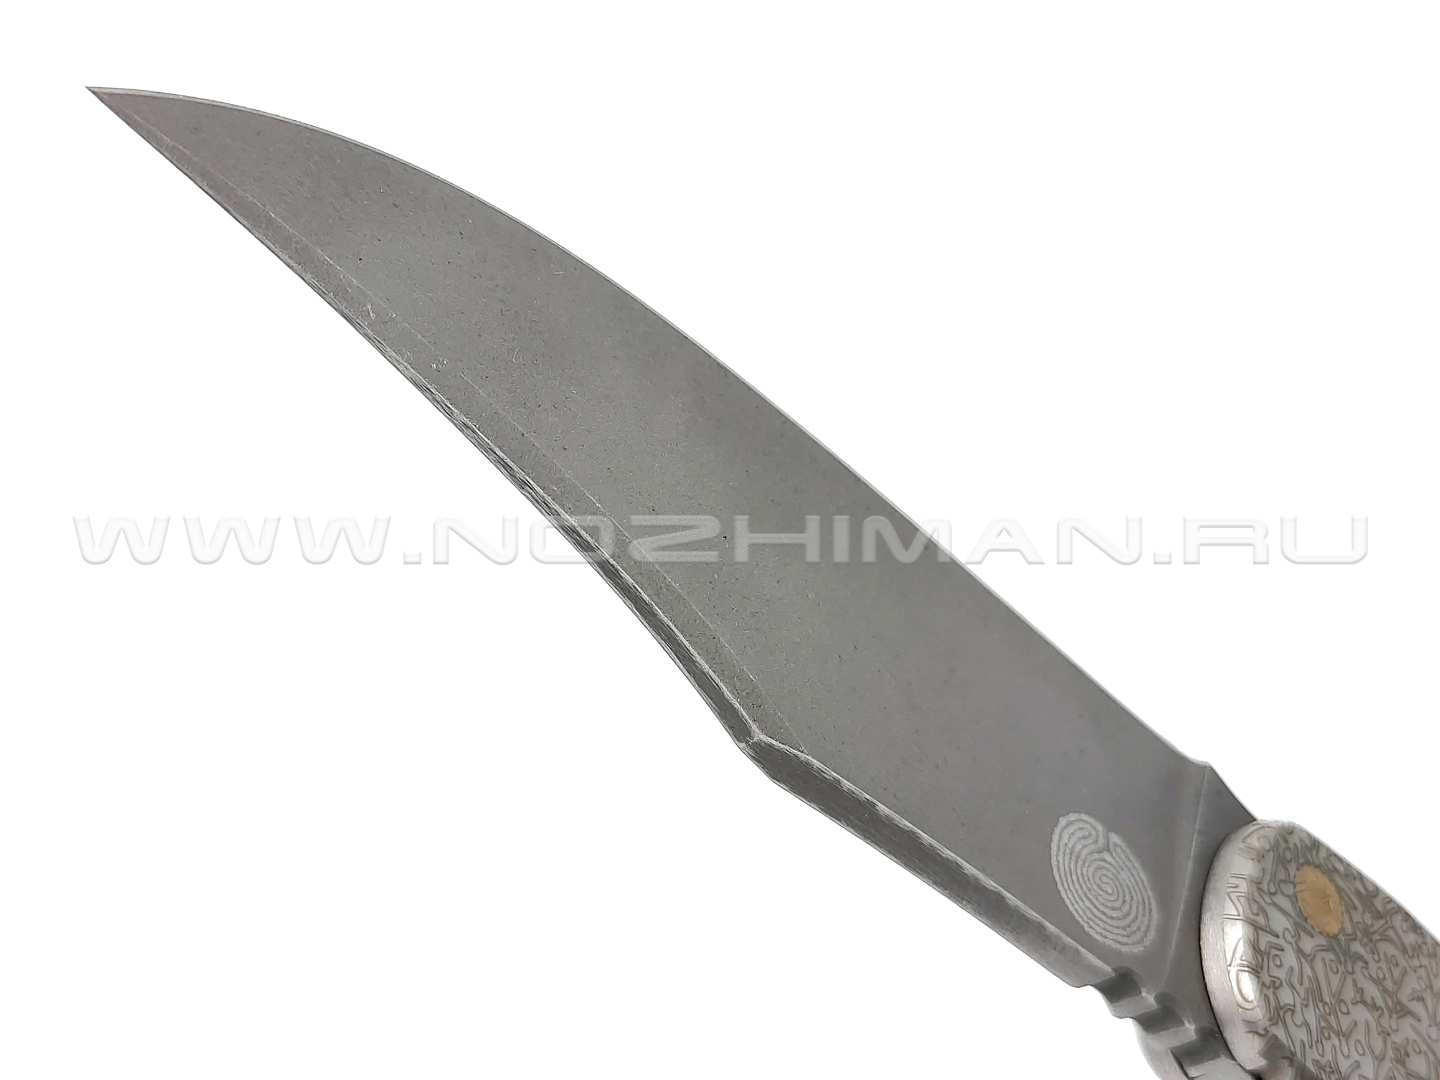 1-й Цех складной нож "Складень - Человечки" сталь K110, рукоять нержавеющая сталь, эмаль